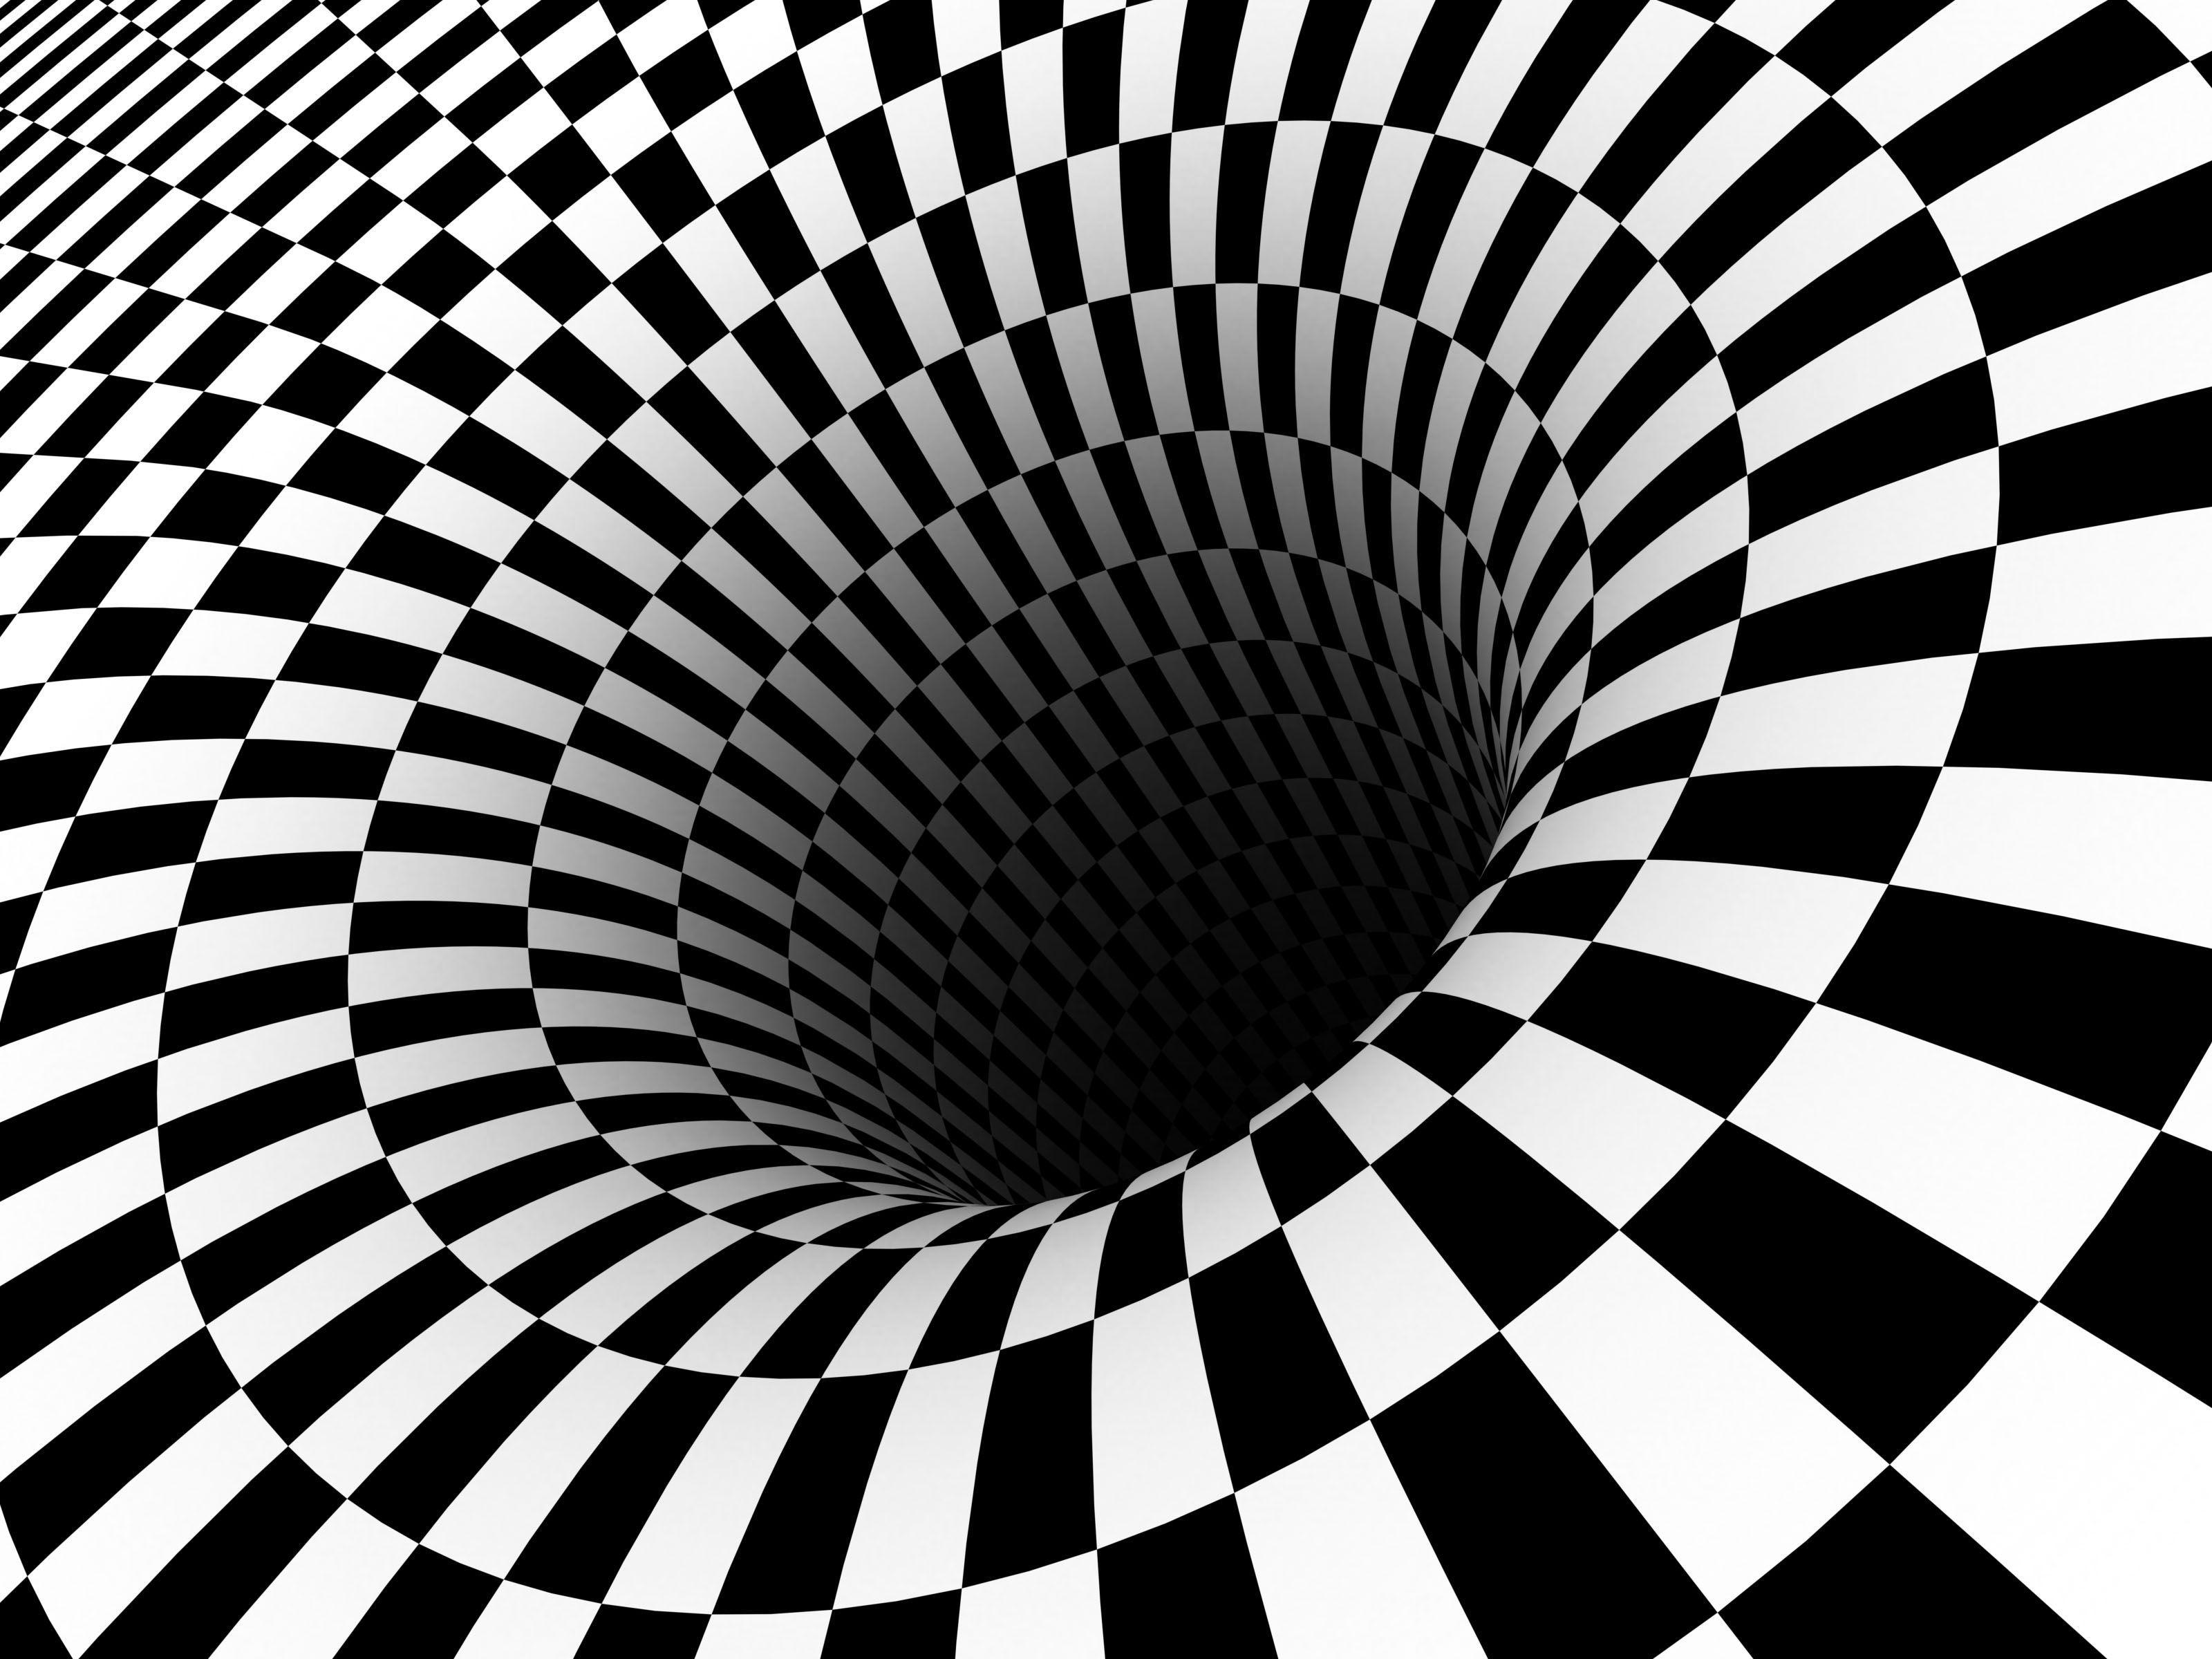 Arcs, Lines & Design. Optical illusions art, Optical illusion wallpaper, Art optical